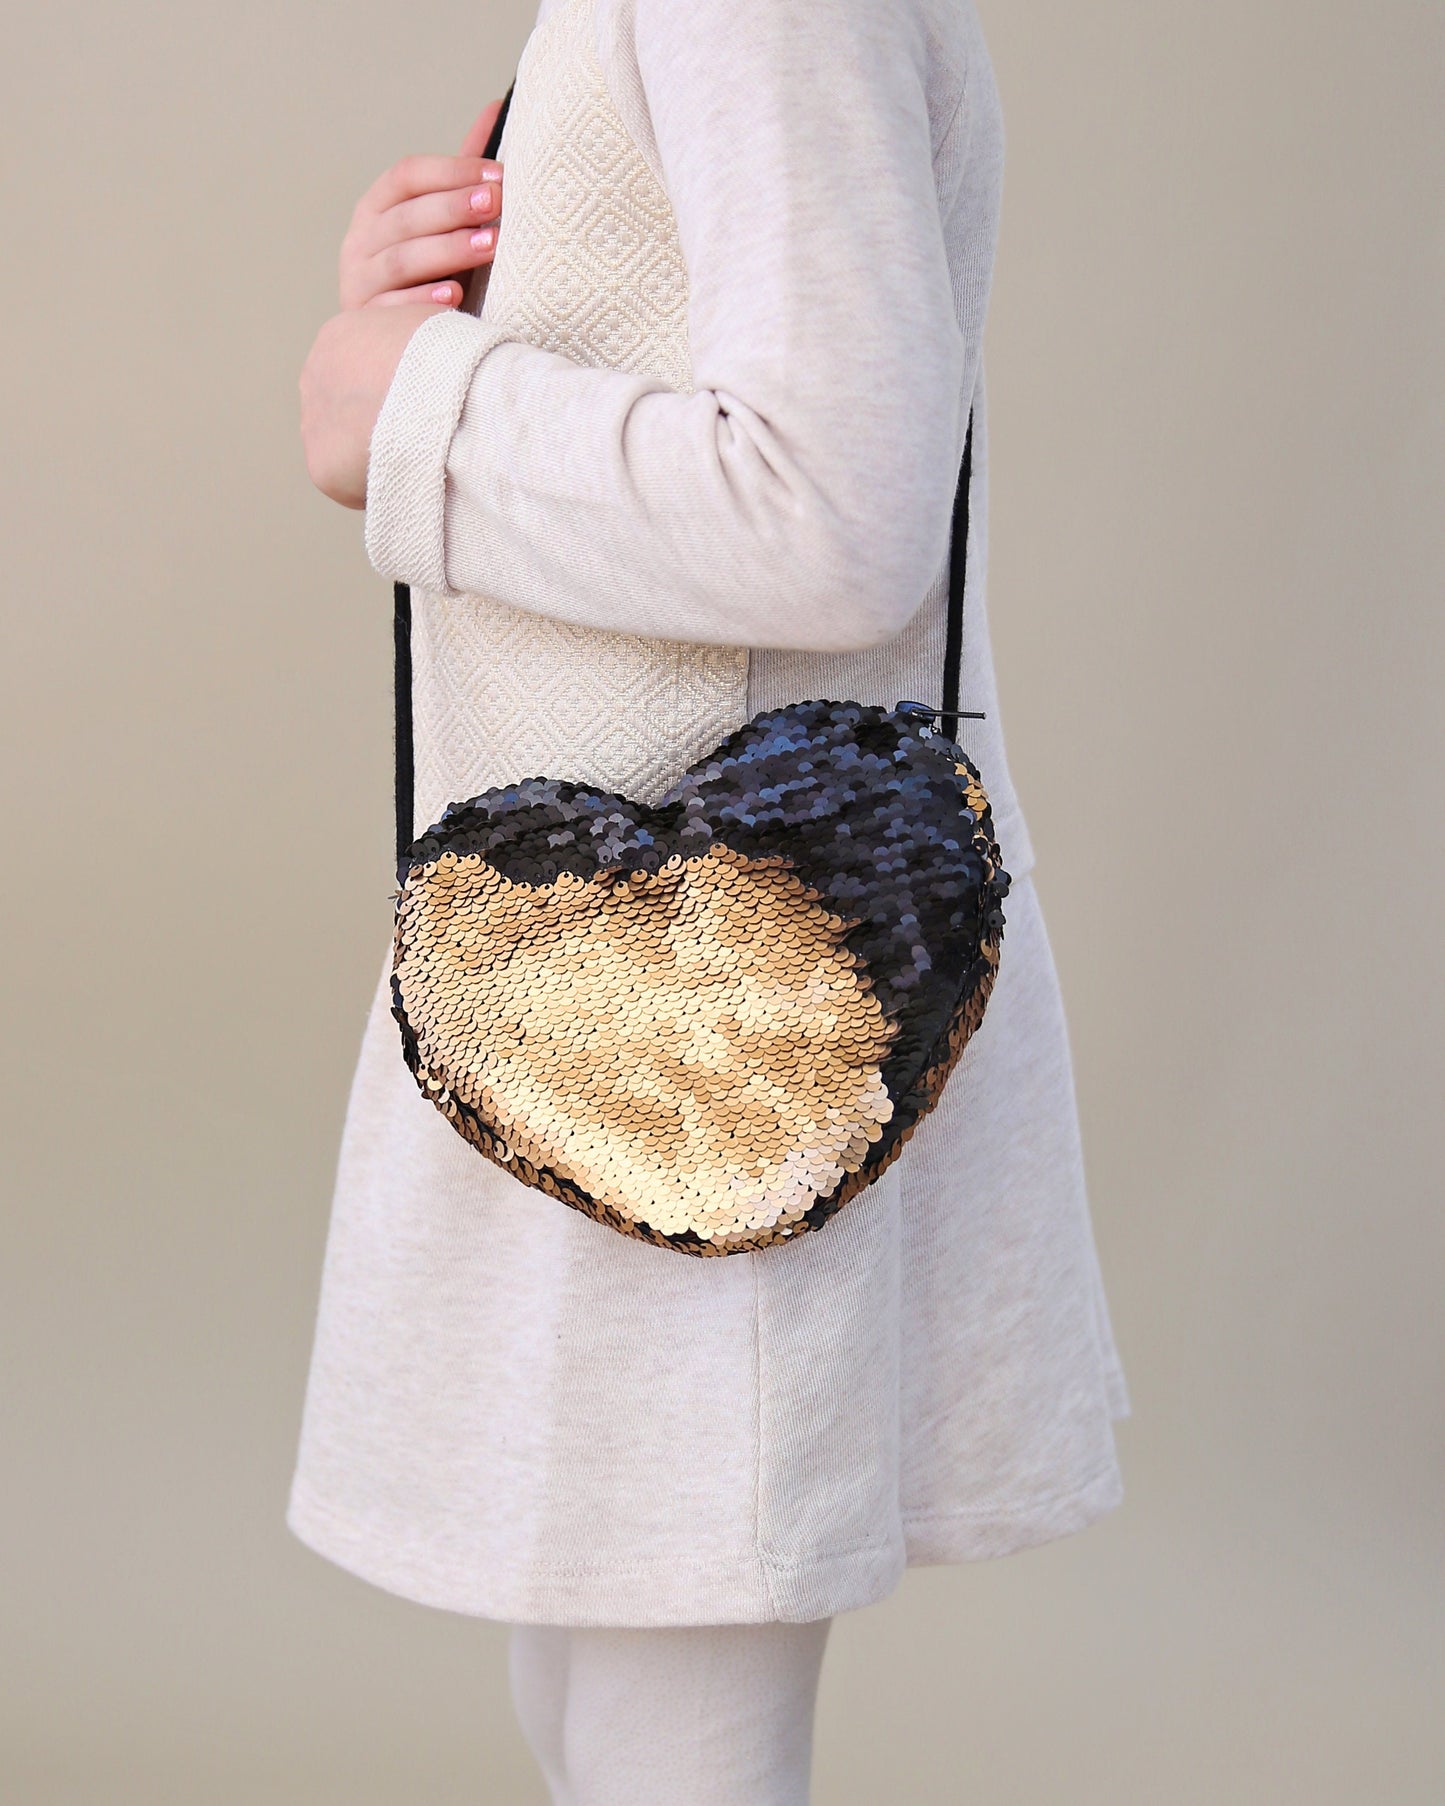 Heart Sequin Purse - Flip Sequin Heart Bag - Girls Heart Purse - Black and Gold Heart Bag